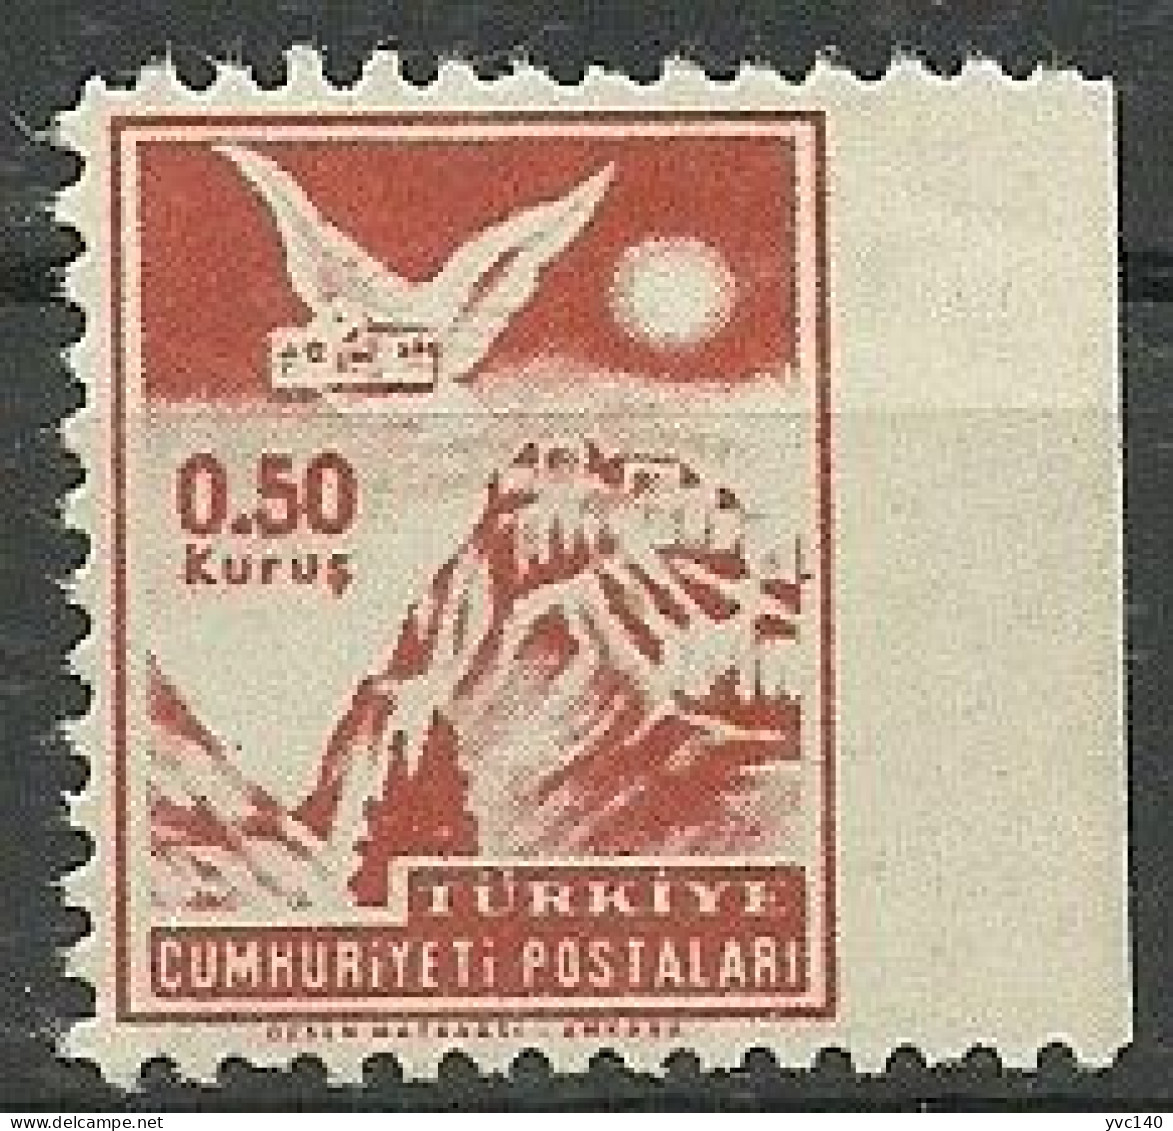 Turkey; 1954 "0.50 Kurus" Postage Stamp ERROR "Imperf. Edge" - Neufs